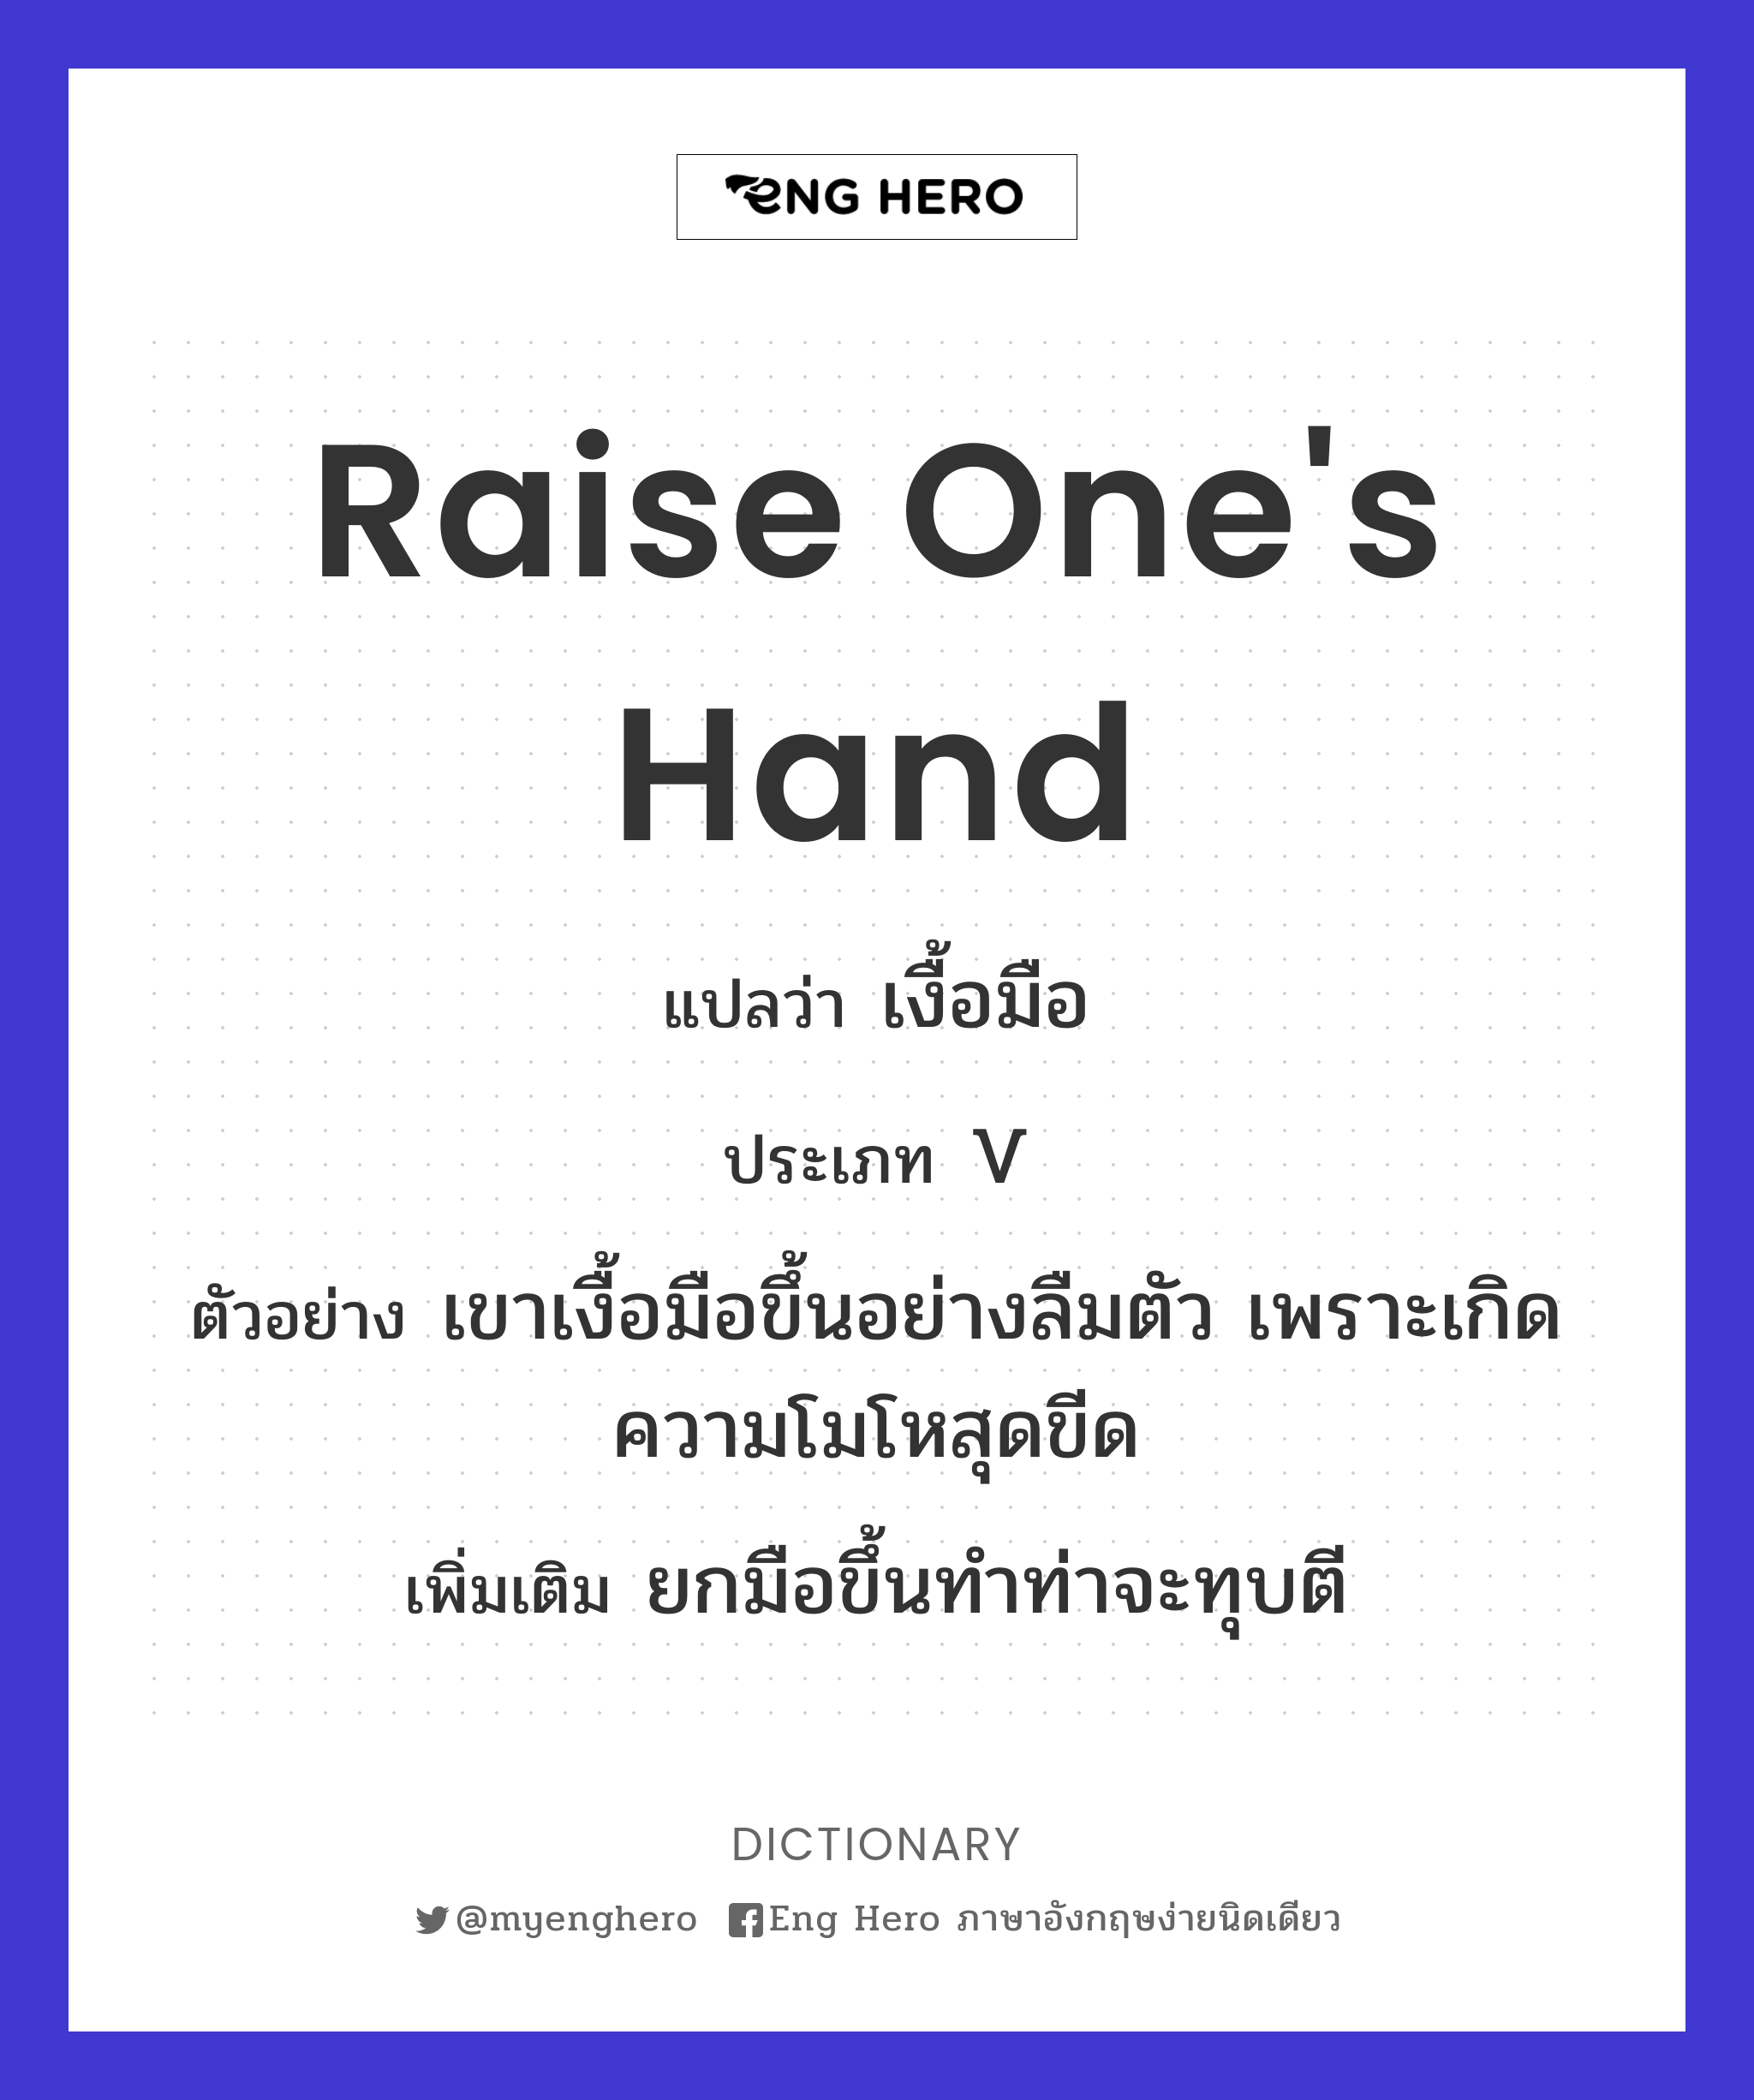 Raise One'S Hand แปลว่า ชูมือ | Eng Hero เรียนภาษาอังกฤษ ออนไลน์ ฟรี